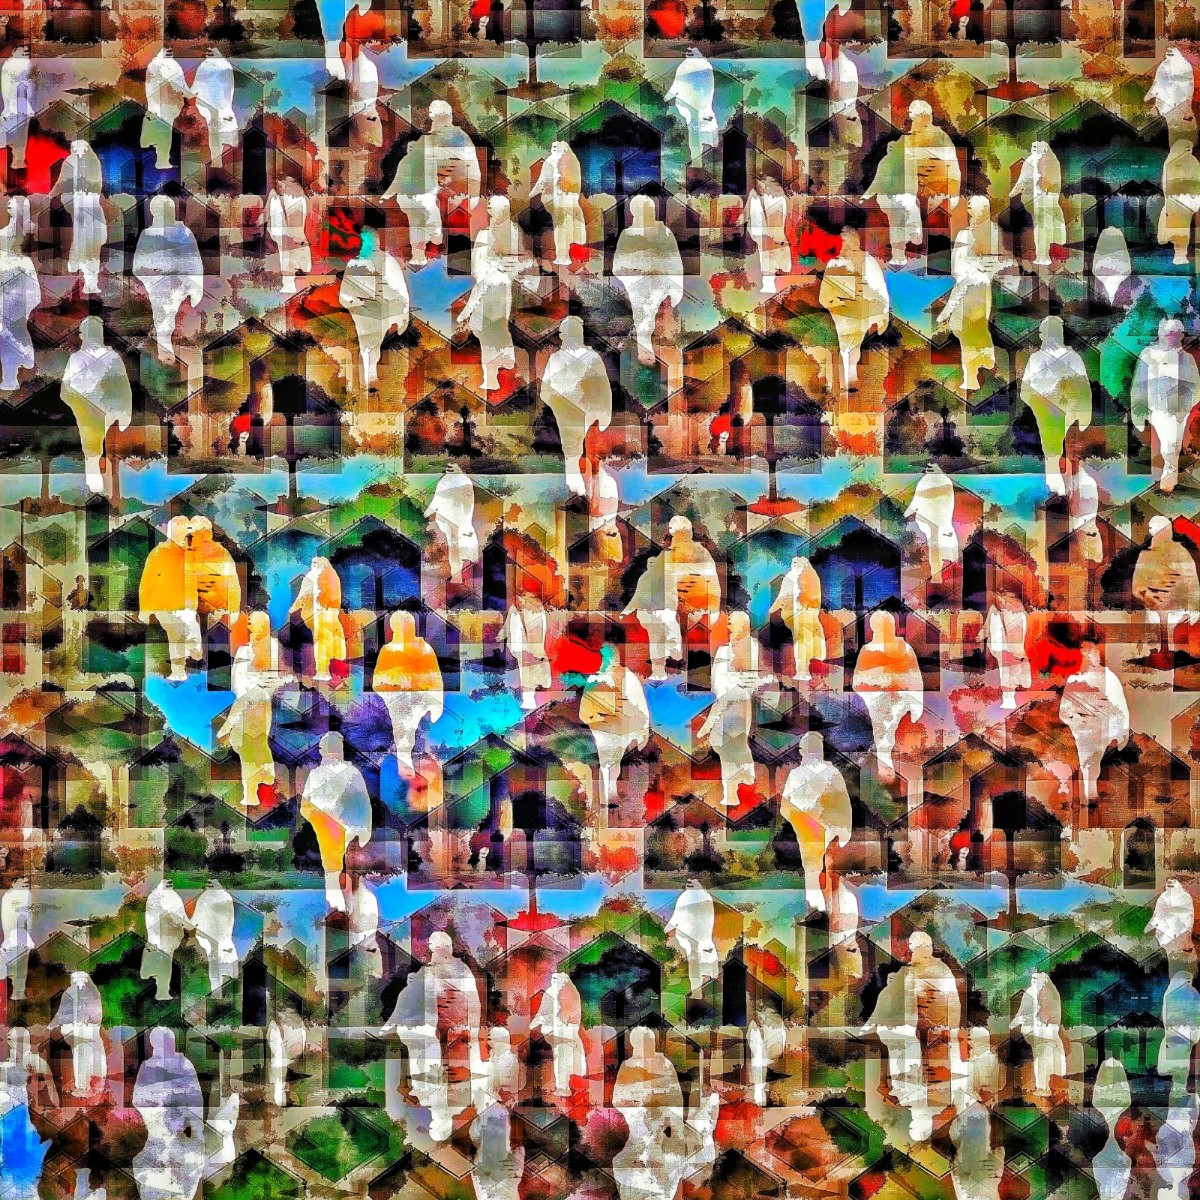 Met AI ingekleurde Escher-achtige grafiek van diverse mens-figuren door elkaar, met soms herinneringen aan de sjabloondruk van Hendrik Werkman